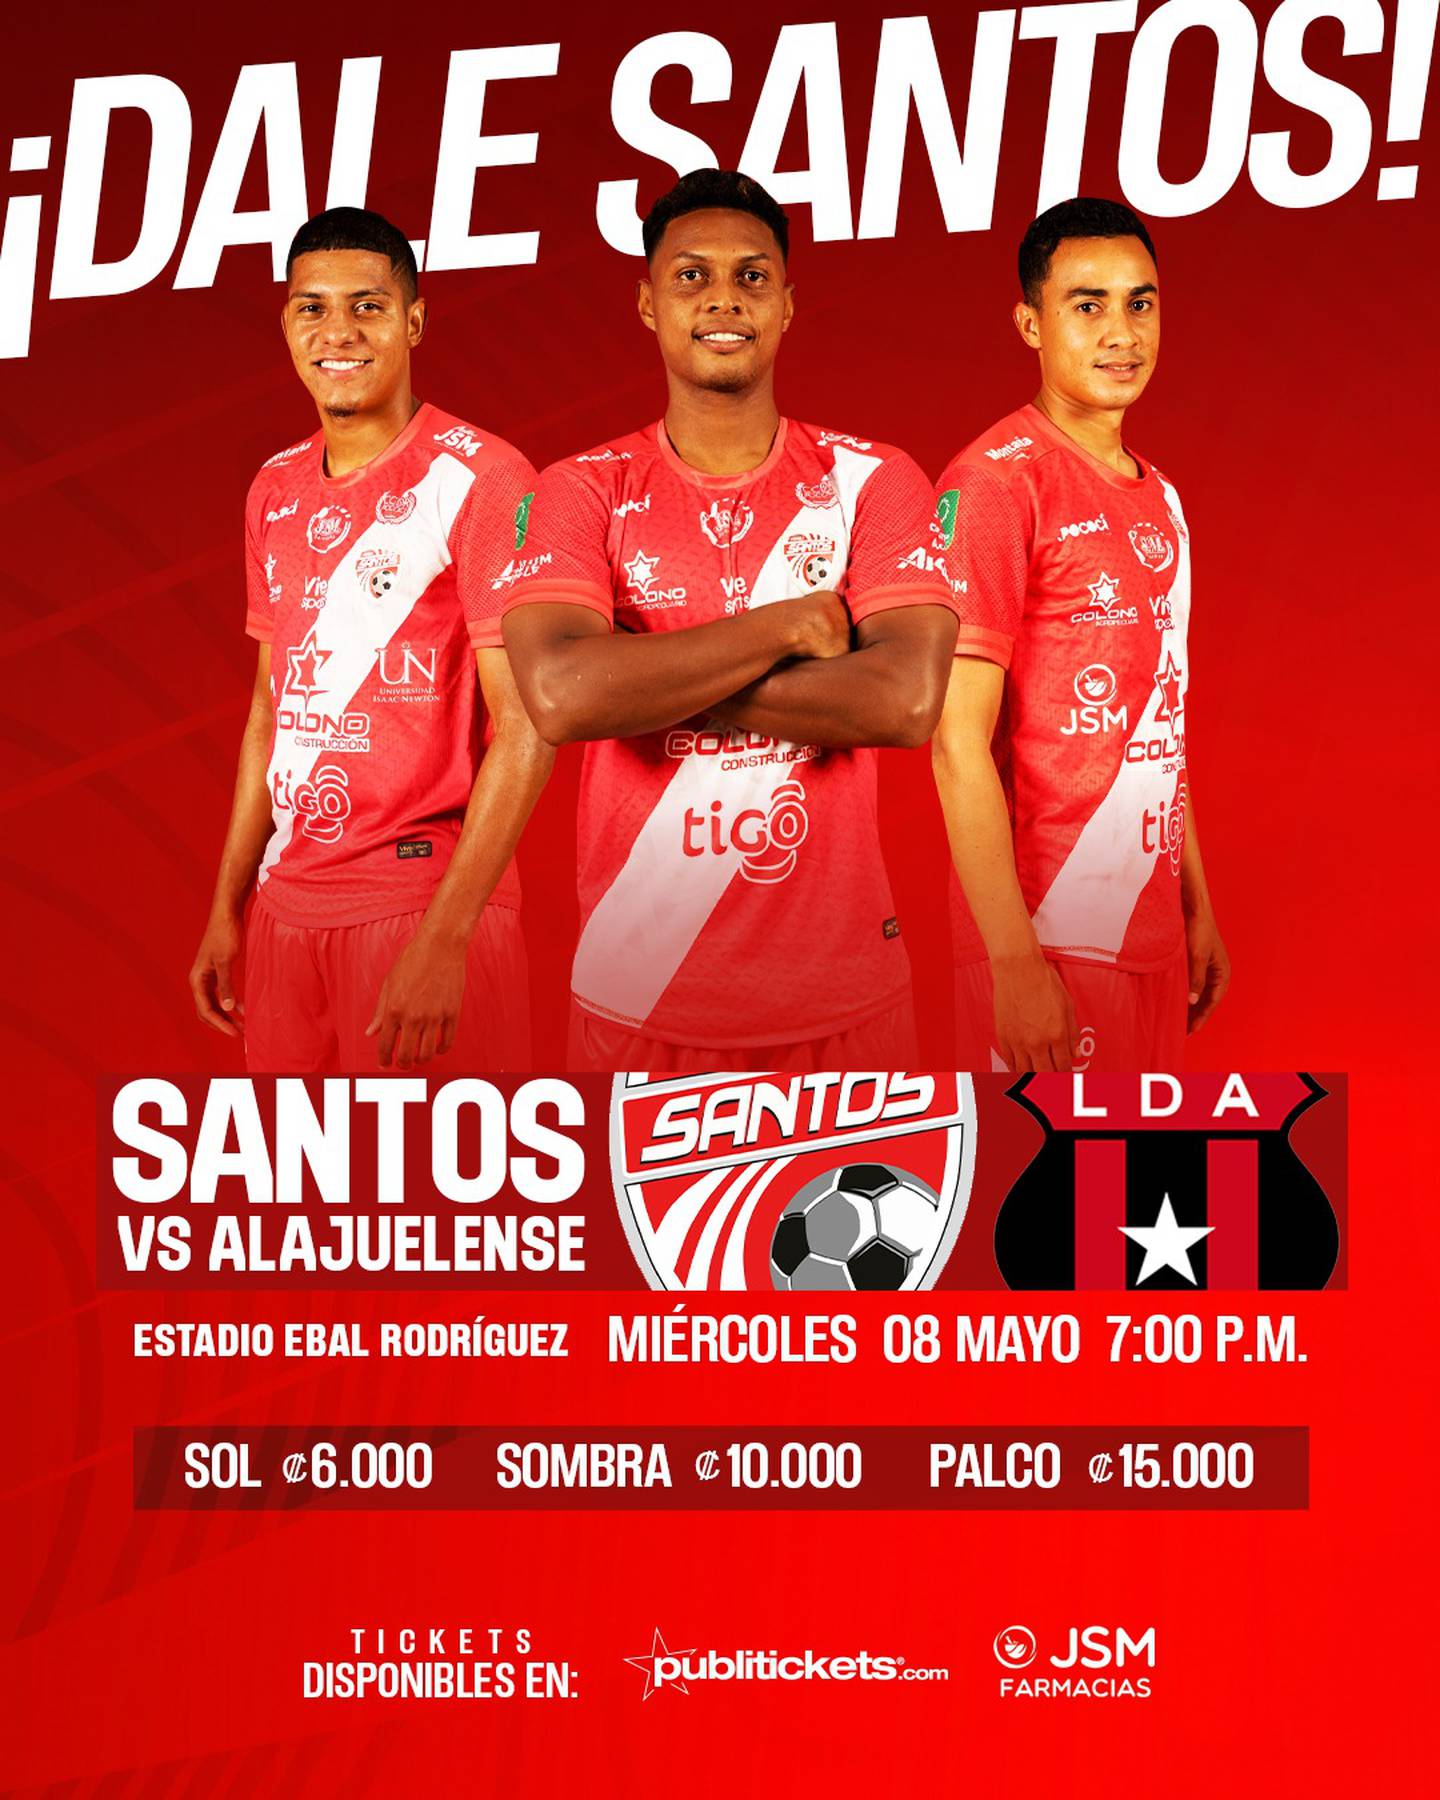 Este es el precio de las entradas para el partido entre Santos y Liga Deportiva Alajuelense.